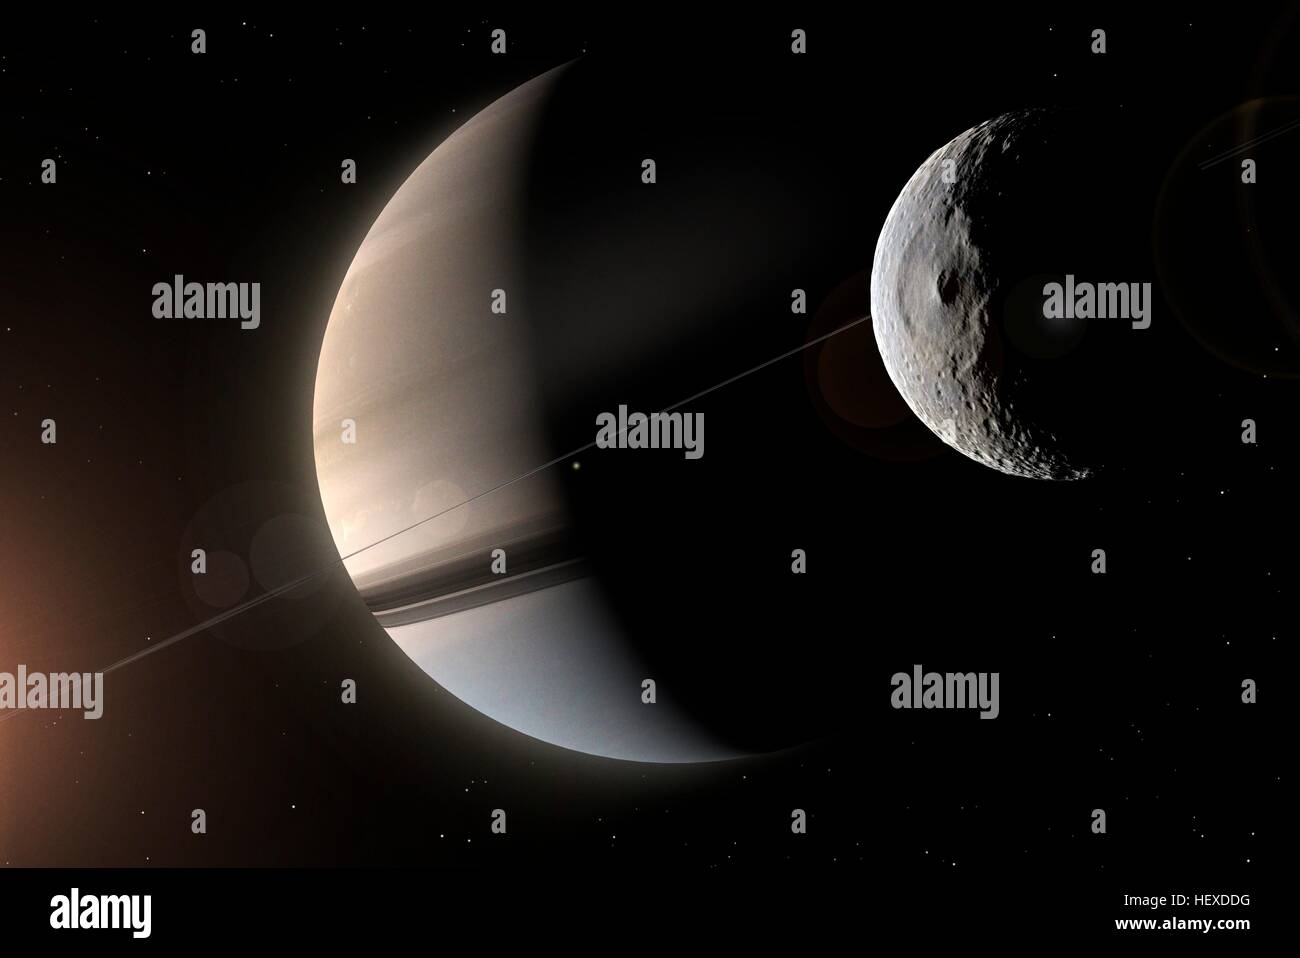 Impression de la géante gazeuse planète Saturne, avec les anneaux vus sur edge. Lumière du soleil filtré par les anneaux colorés a l'hémisphère inférieur une nuance de bleu, un effet qui a été photographié par la sonde Cassini. L'intérieur et le plus petit des principales Lunes, Mimas, est indiqué en face de la planète, dominée par son grand cratère Herschel. Banque D'Images